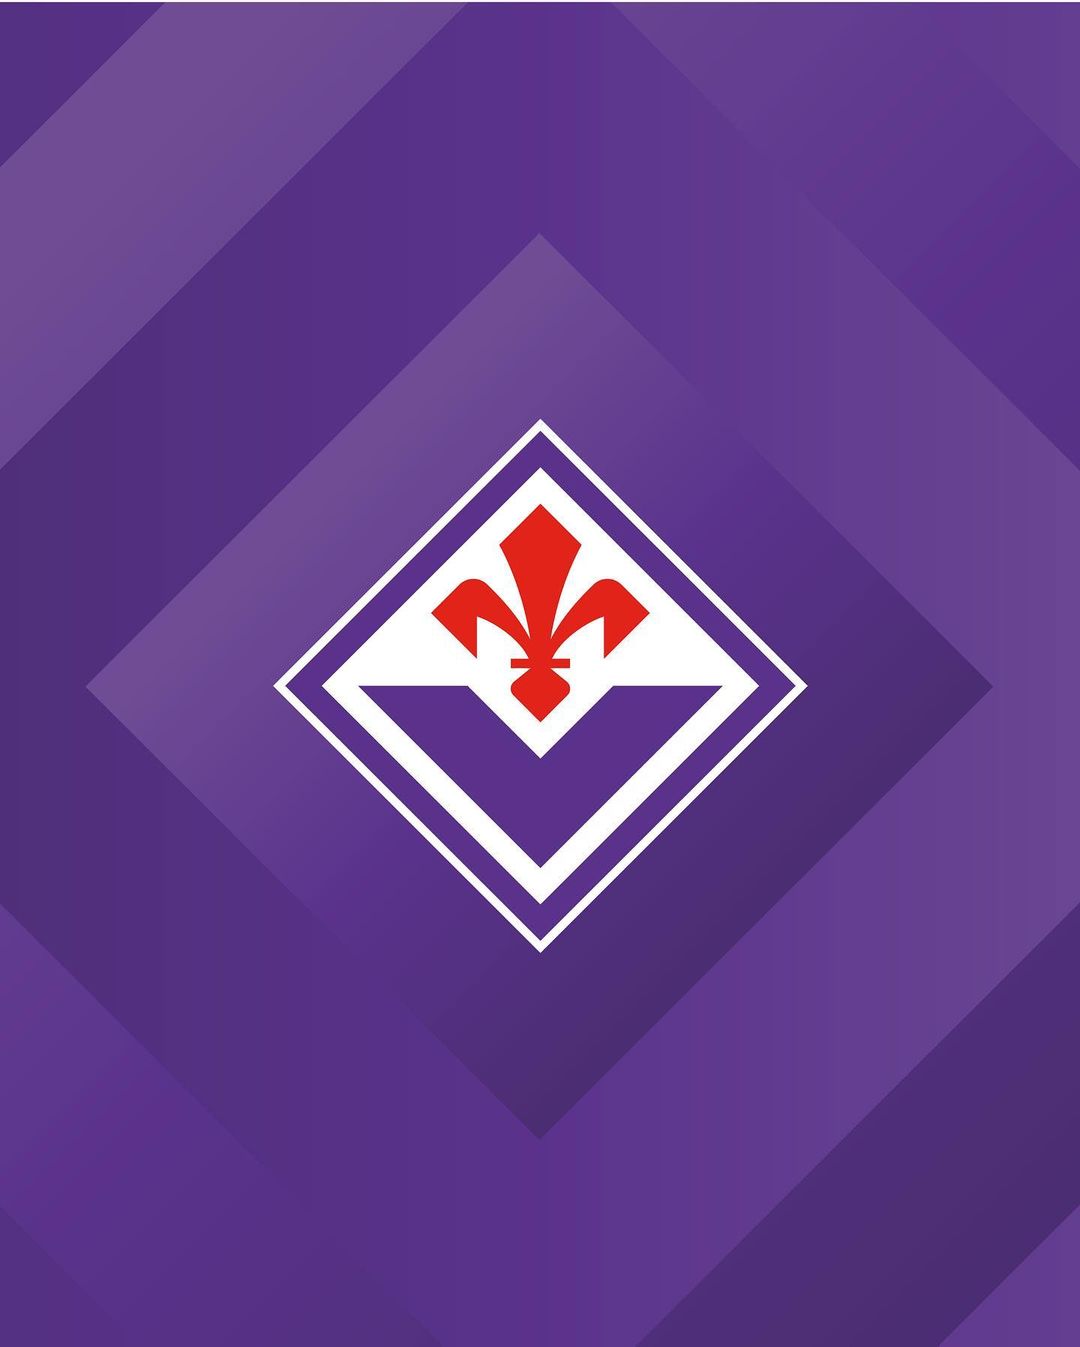 La Fiorentina portera un nouveau logo sur ses maillots a partir de 2022-2023